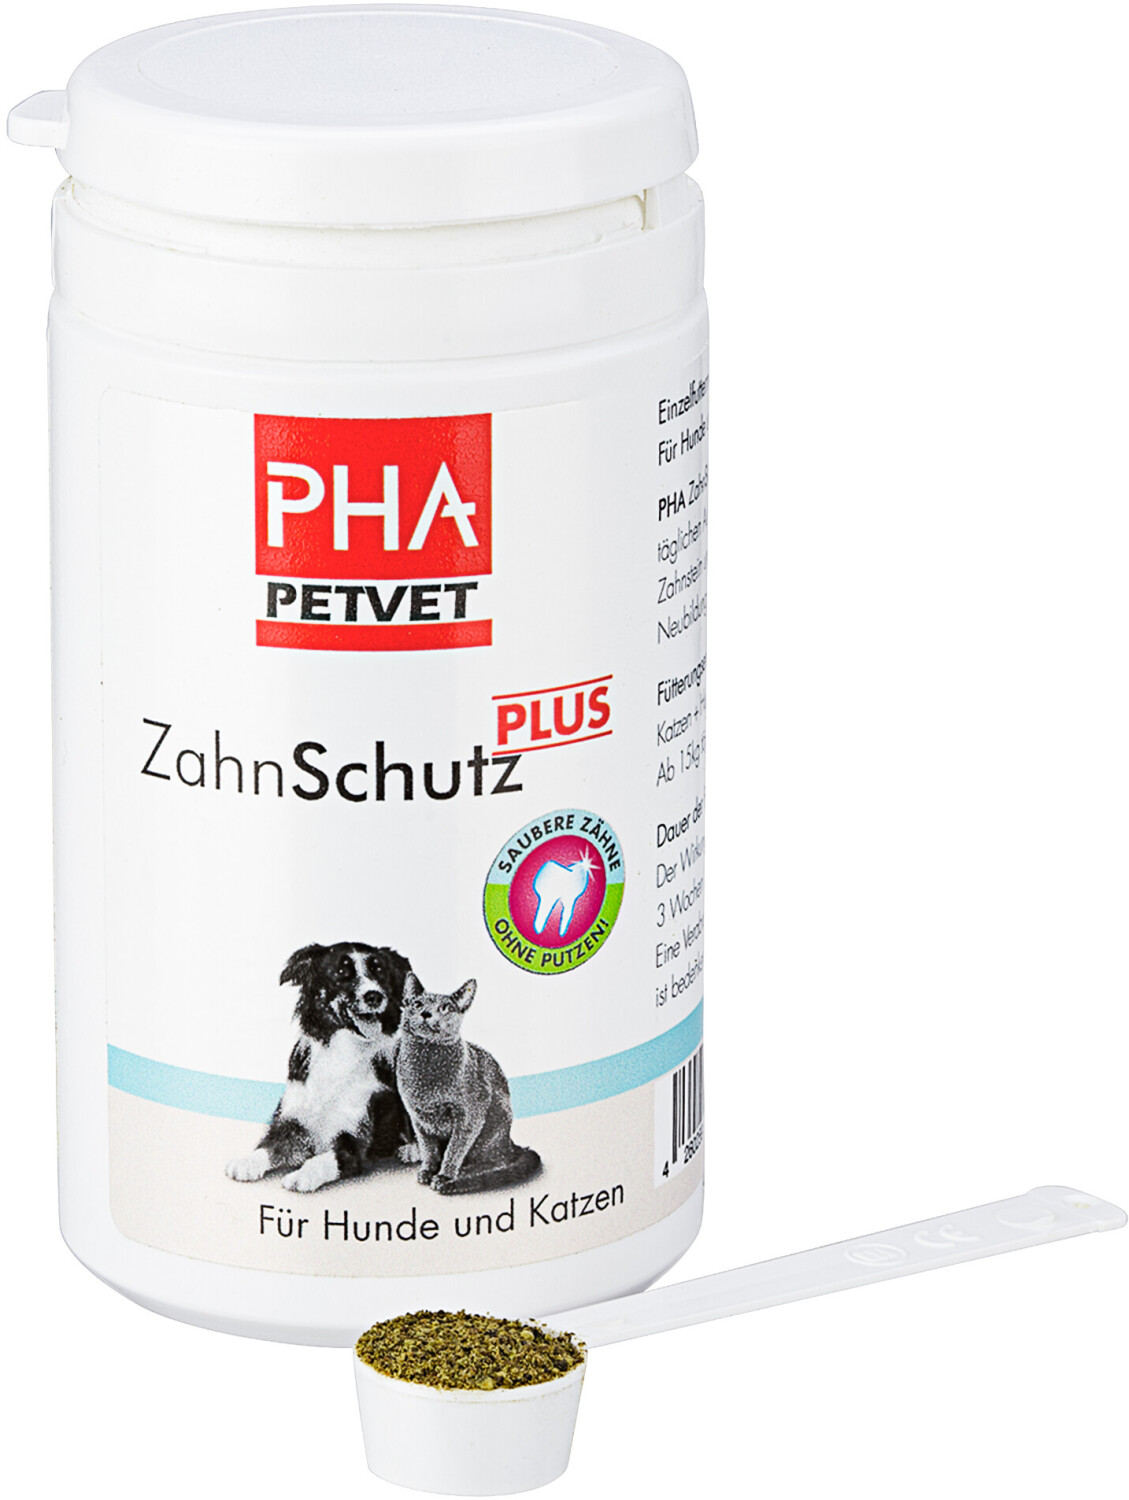 PHA ZahnSchutz PLUS für Hunde und Katzen 60g ab 12,91 €